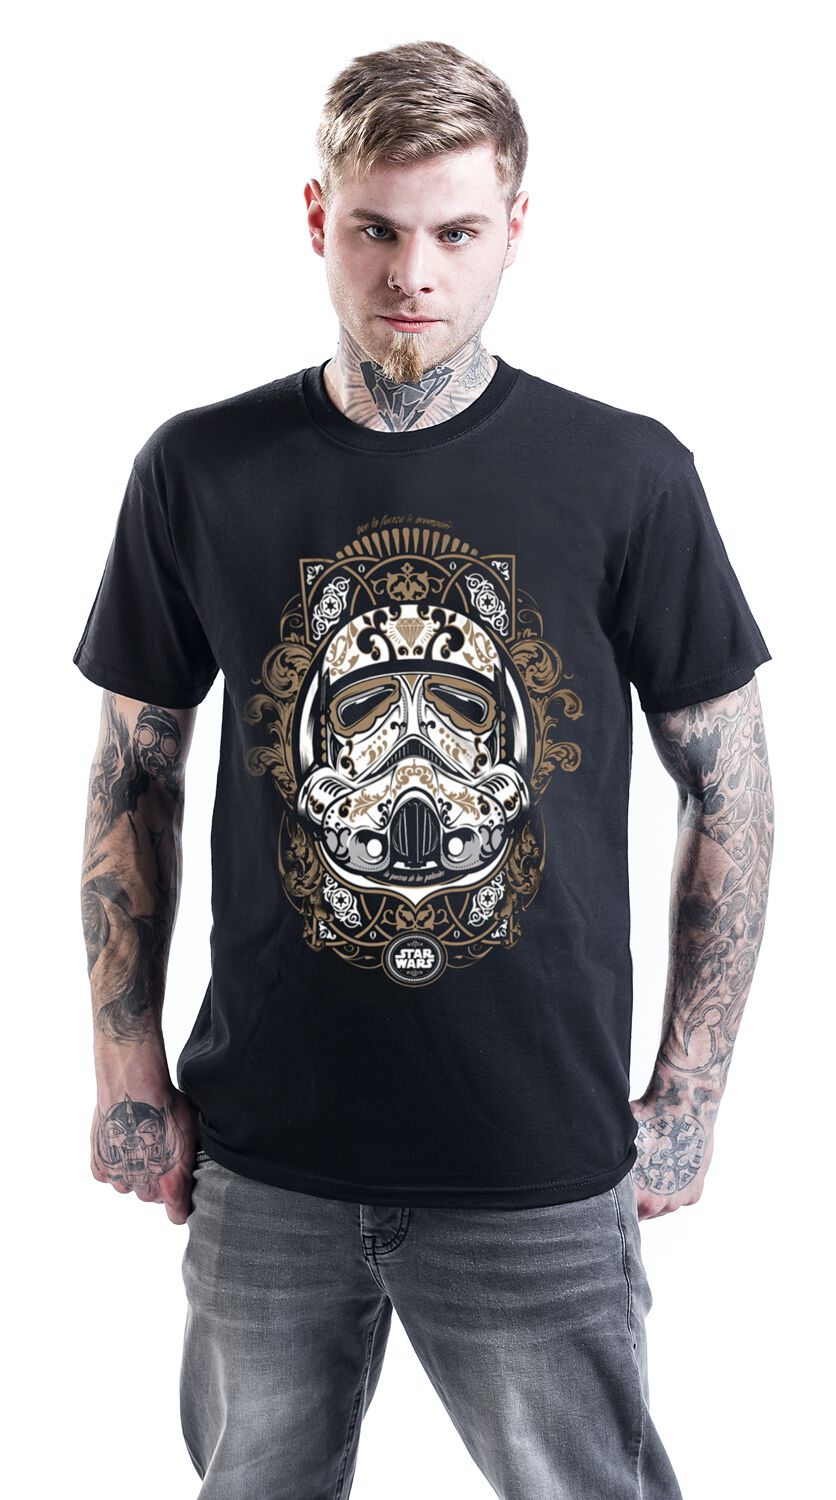 Trooper De Los Muertos T-Shirt Buy online now